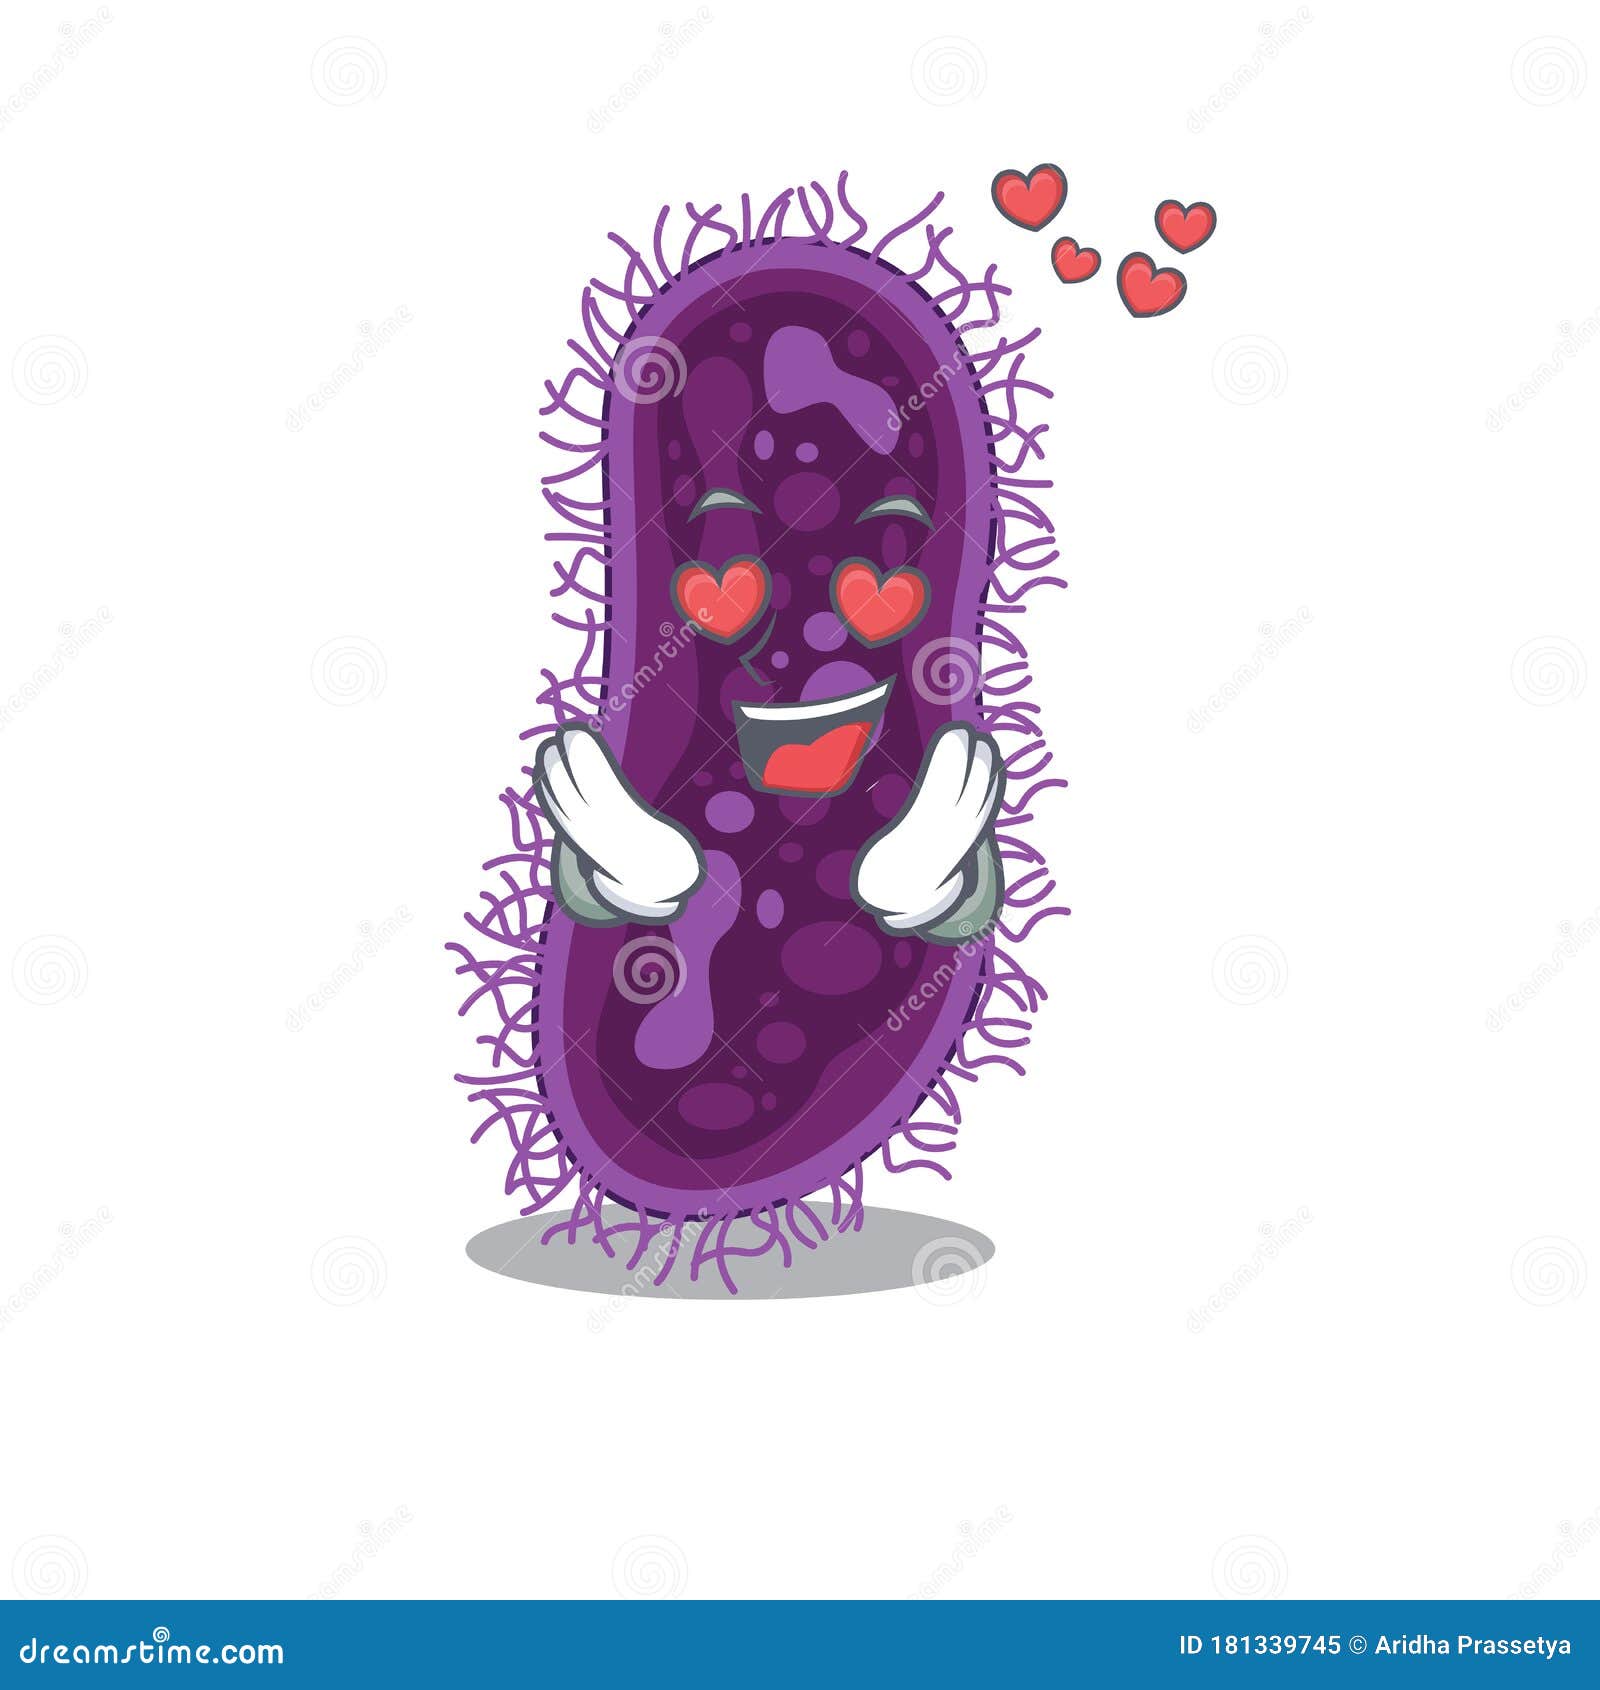 Cute Lactobacillus Rhamnosus Bacteria Cartoon Character Has a Falling ...